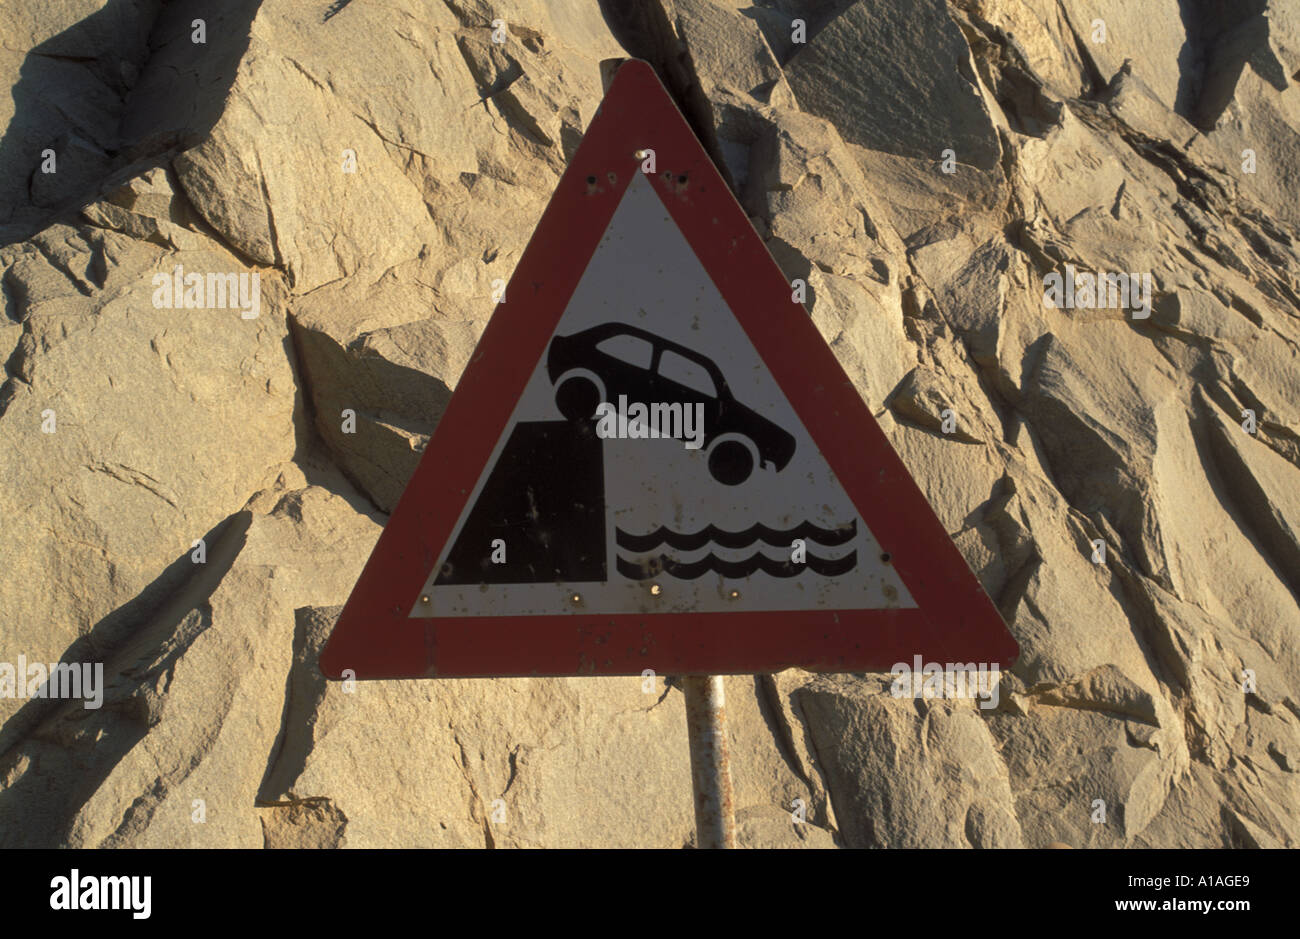 Verkehr Warnzeichen für Autos, die Warnung von treibende Opver Wand ins Wasser Lüderitz Namibia stürzen Stockfoto